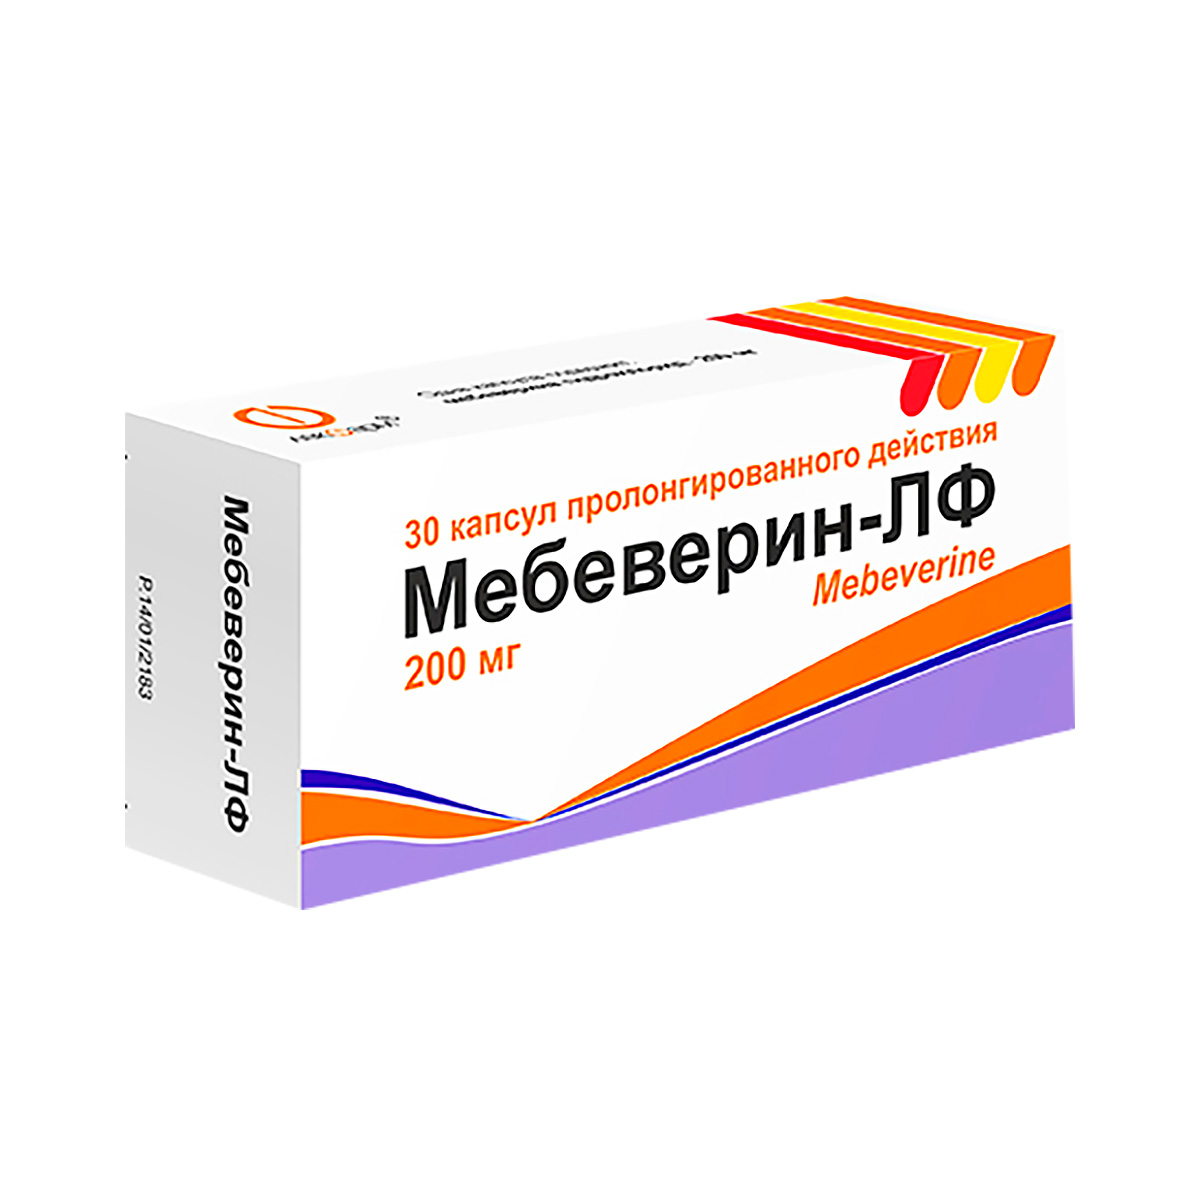 Мебеверин-ЛФ 200 мг капсулы пролонгированного действия 30 шт